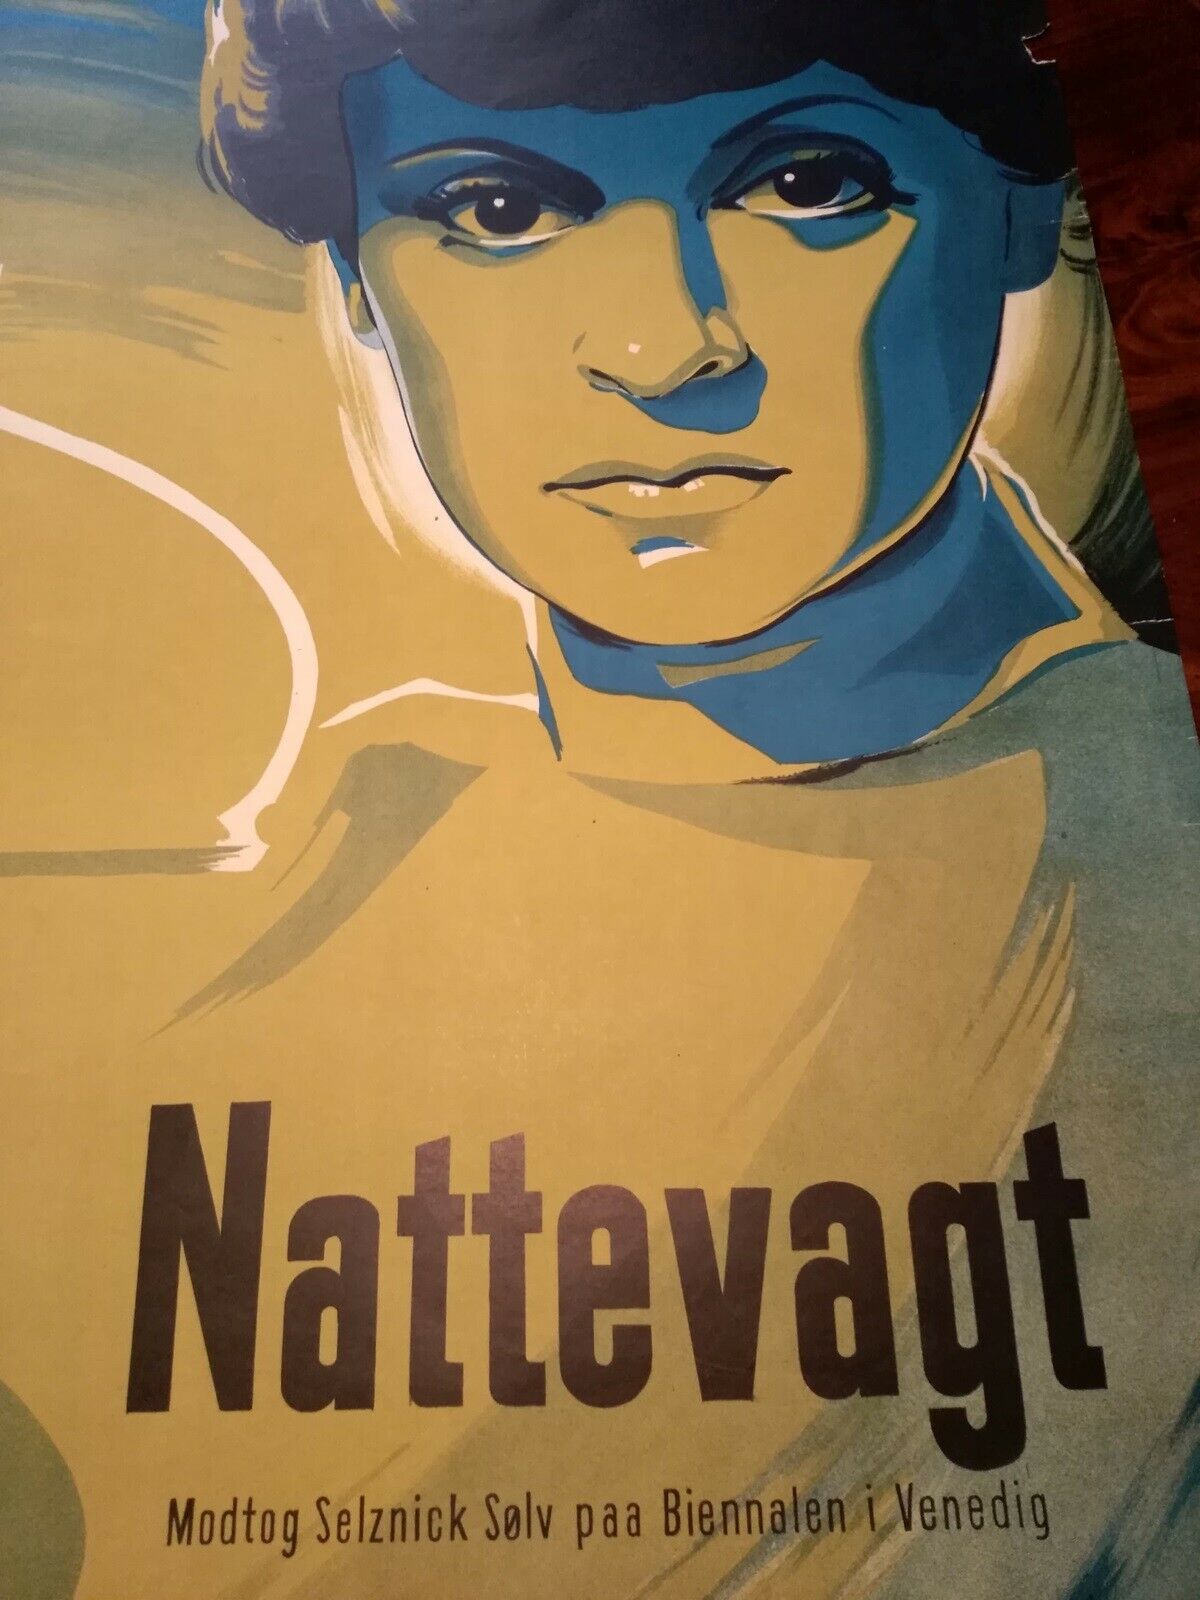 Original plakat fra 1949, BS, motiv: Nattevagt